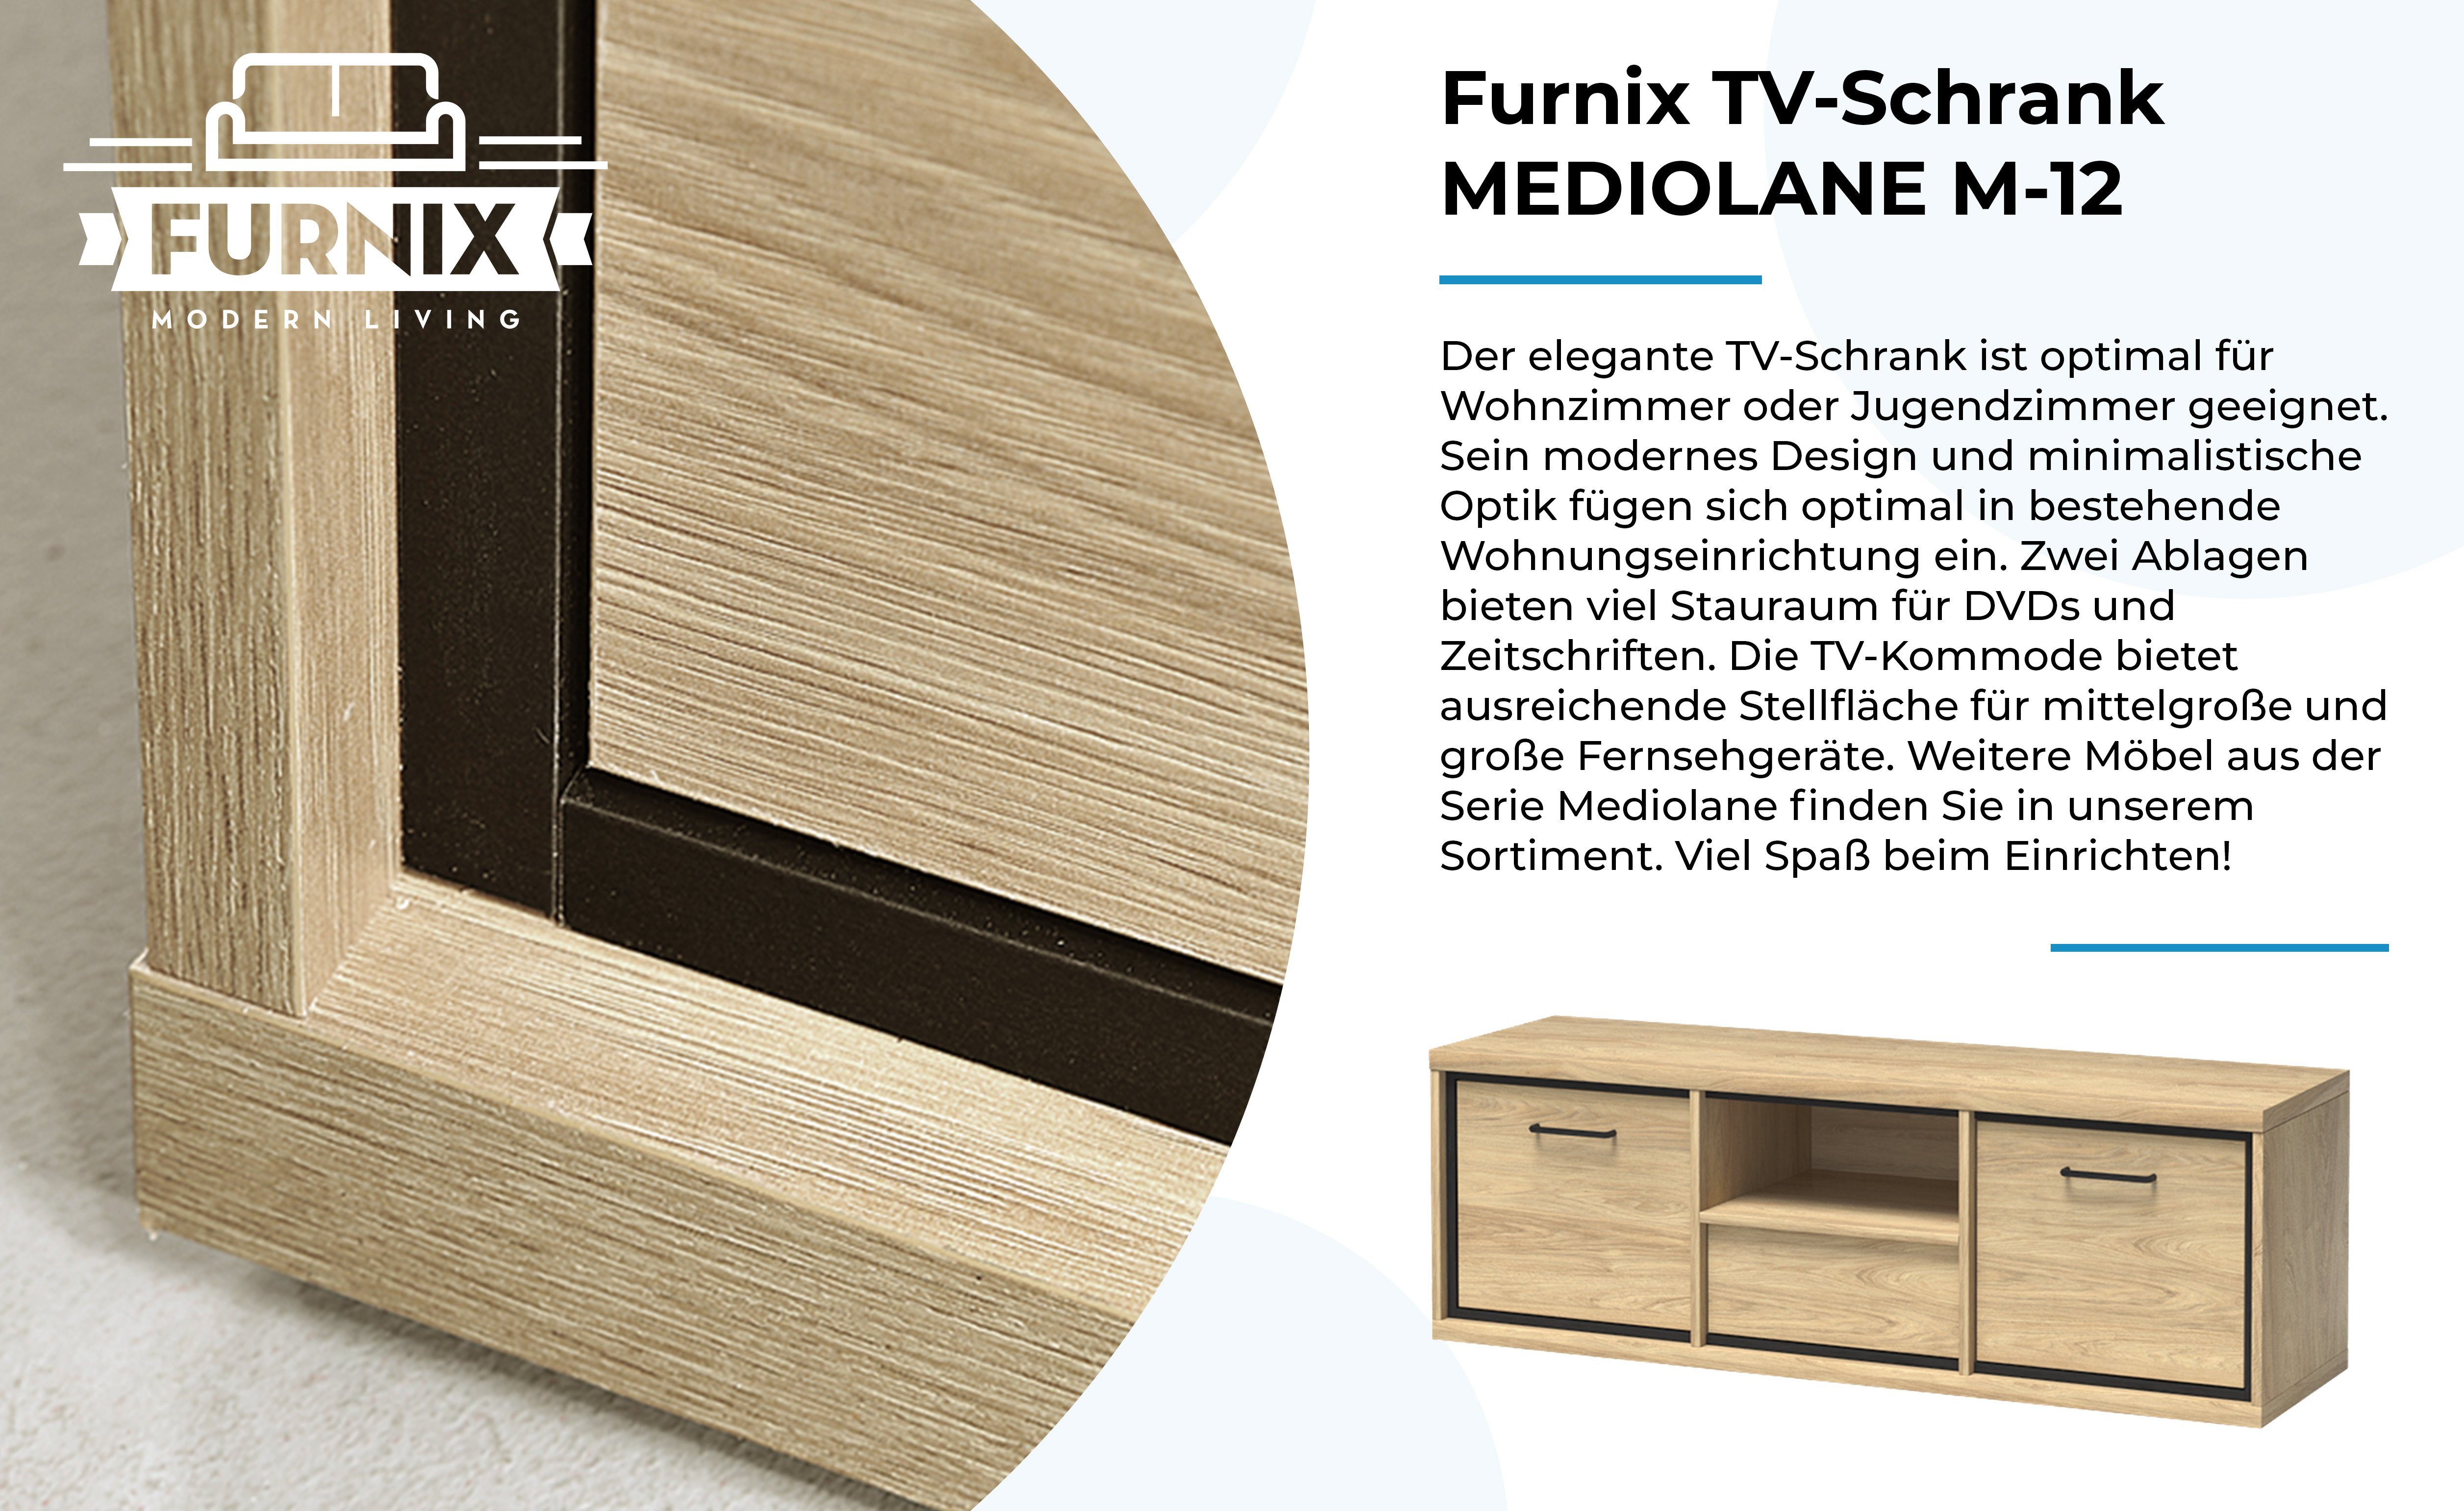 Hängende TV-Schrank Furnix M-12 TV-Kommode, H47,5 cm Lowboard, RTV-Schrank x MEDIOLANE x T41 Wotan B139